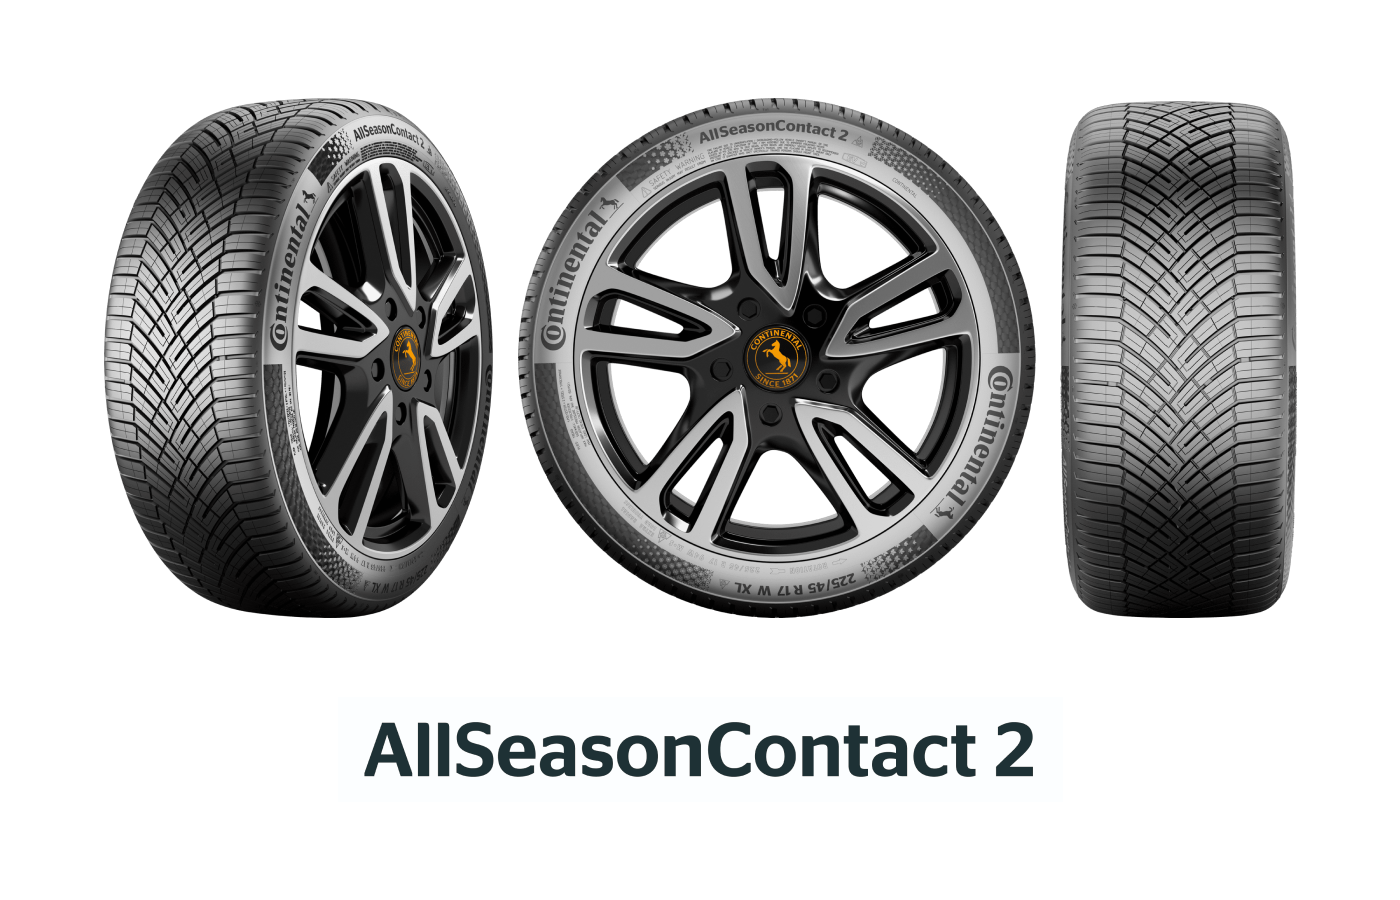 天候に左右されない安全性とドライビングプレジャーを追及した オールシーズンタイヤ「AllSeasonCotact 2」を発売 | コンチネンタルタイヤ